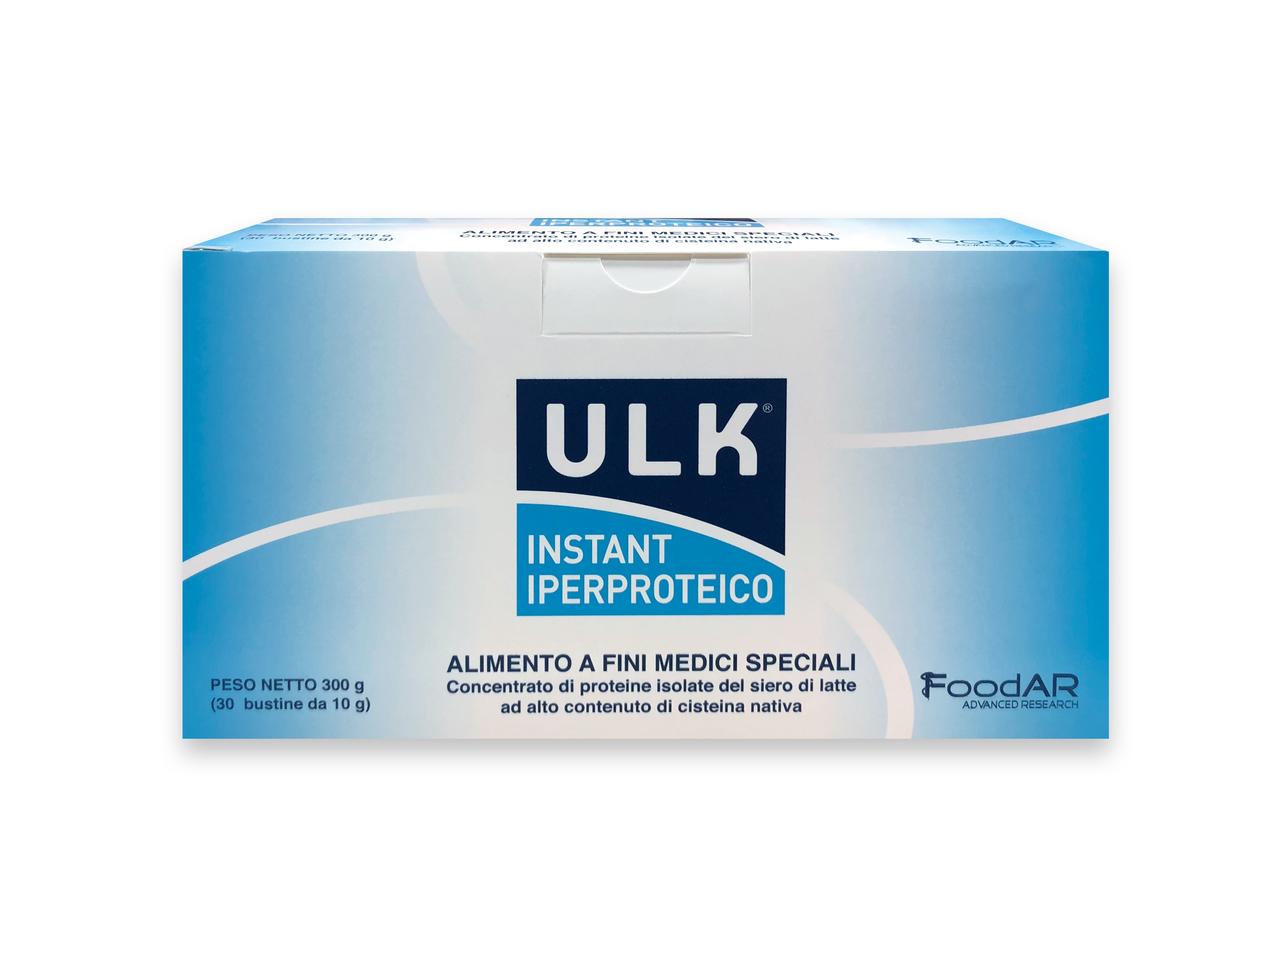 ULK Instant Iperproteico 30bs x 10g